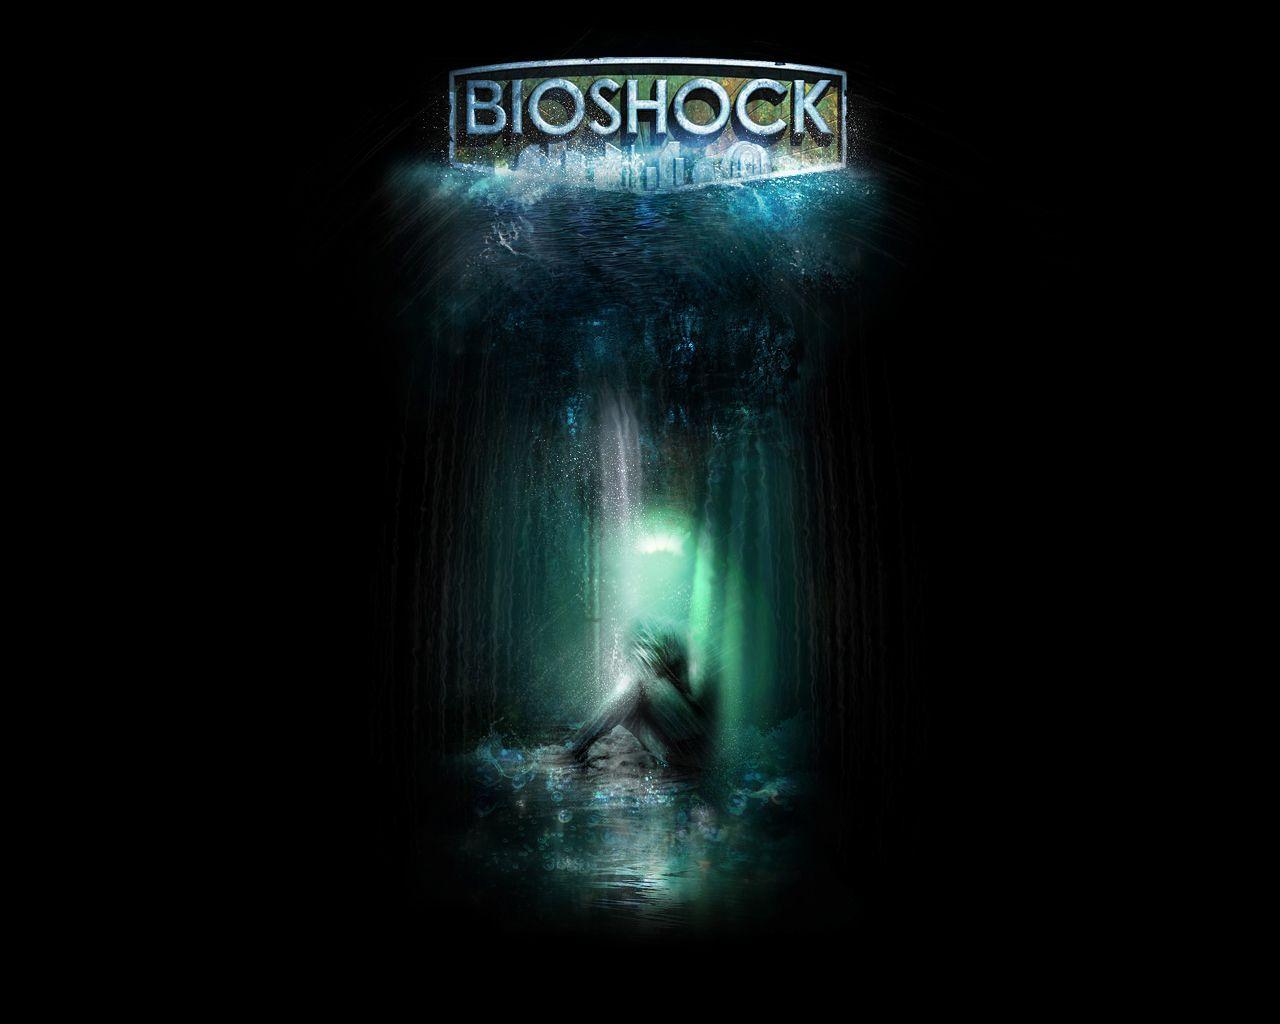 Download BioShock Wallpaper 1080p Full Size. Free Game